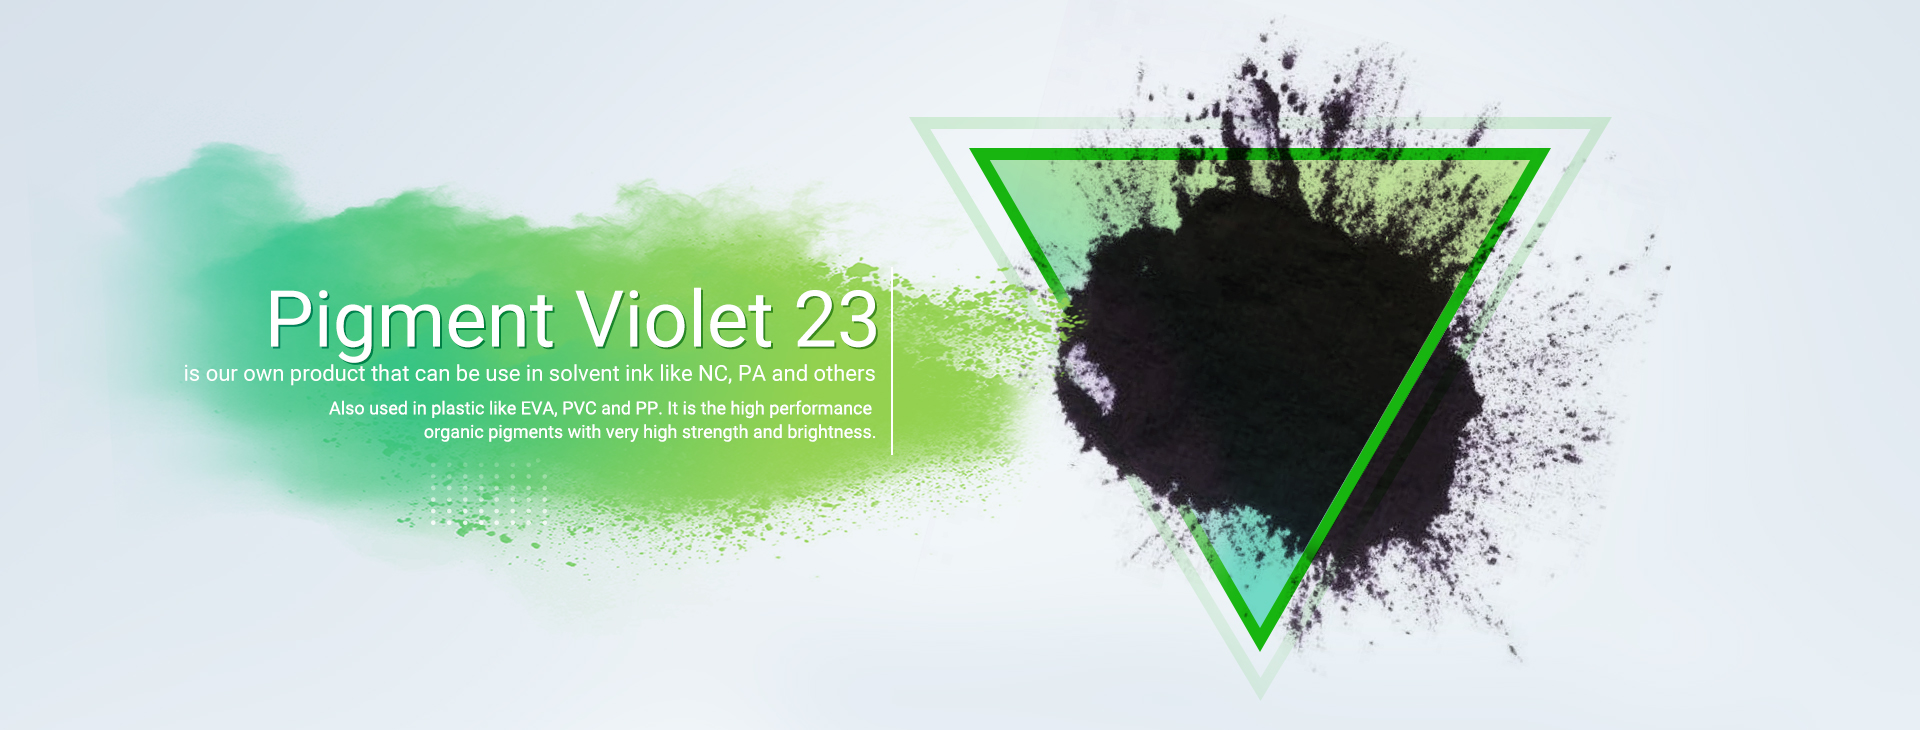 Tinte Efficient Solvent Black 27, ampliamente utilizado en la industria del plástico